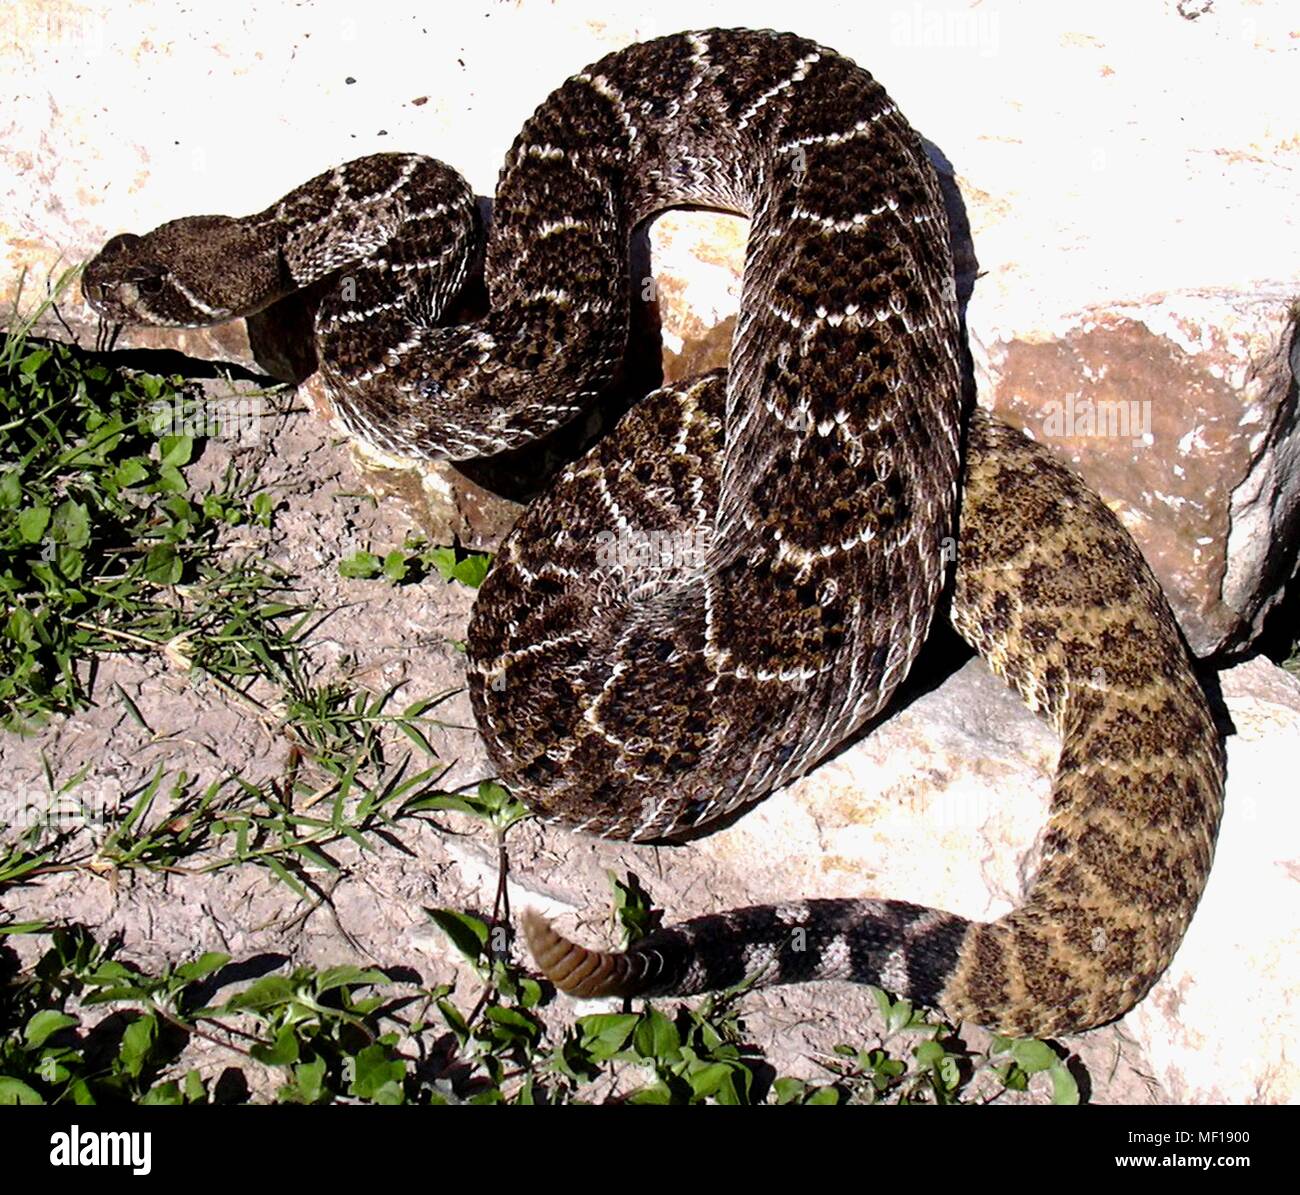 Western diamondback rattlesnake (Crotalus atrox), 2005. Immagine cortesia di centri per il controllo delle malattie (CDC) / Edward J. Wozniak. () Foto Stock